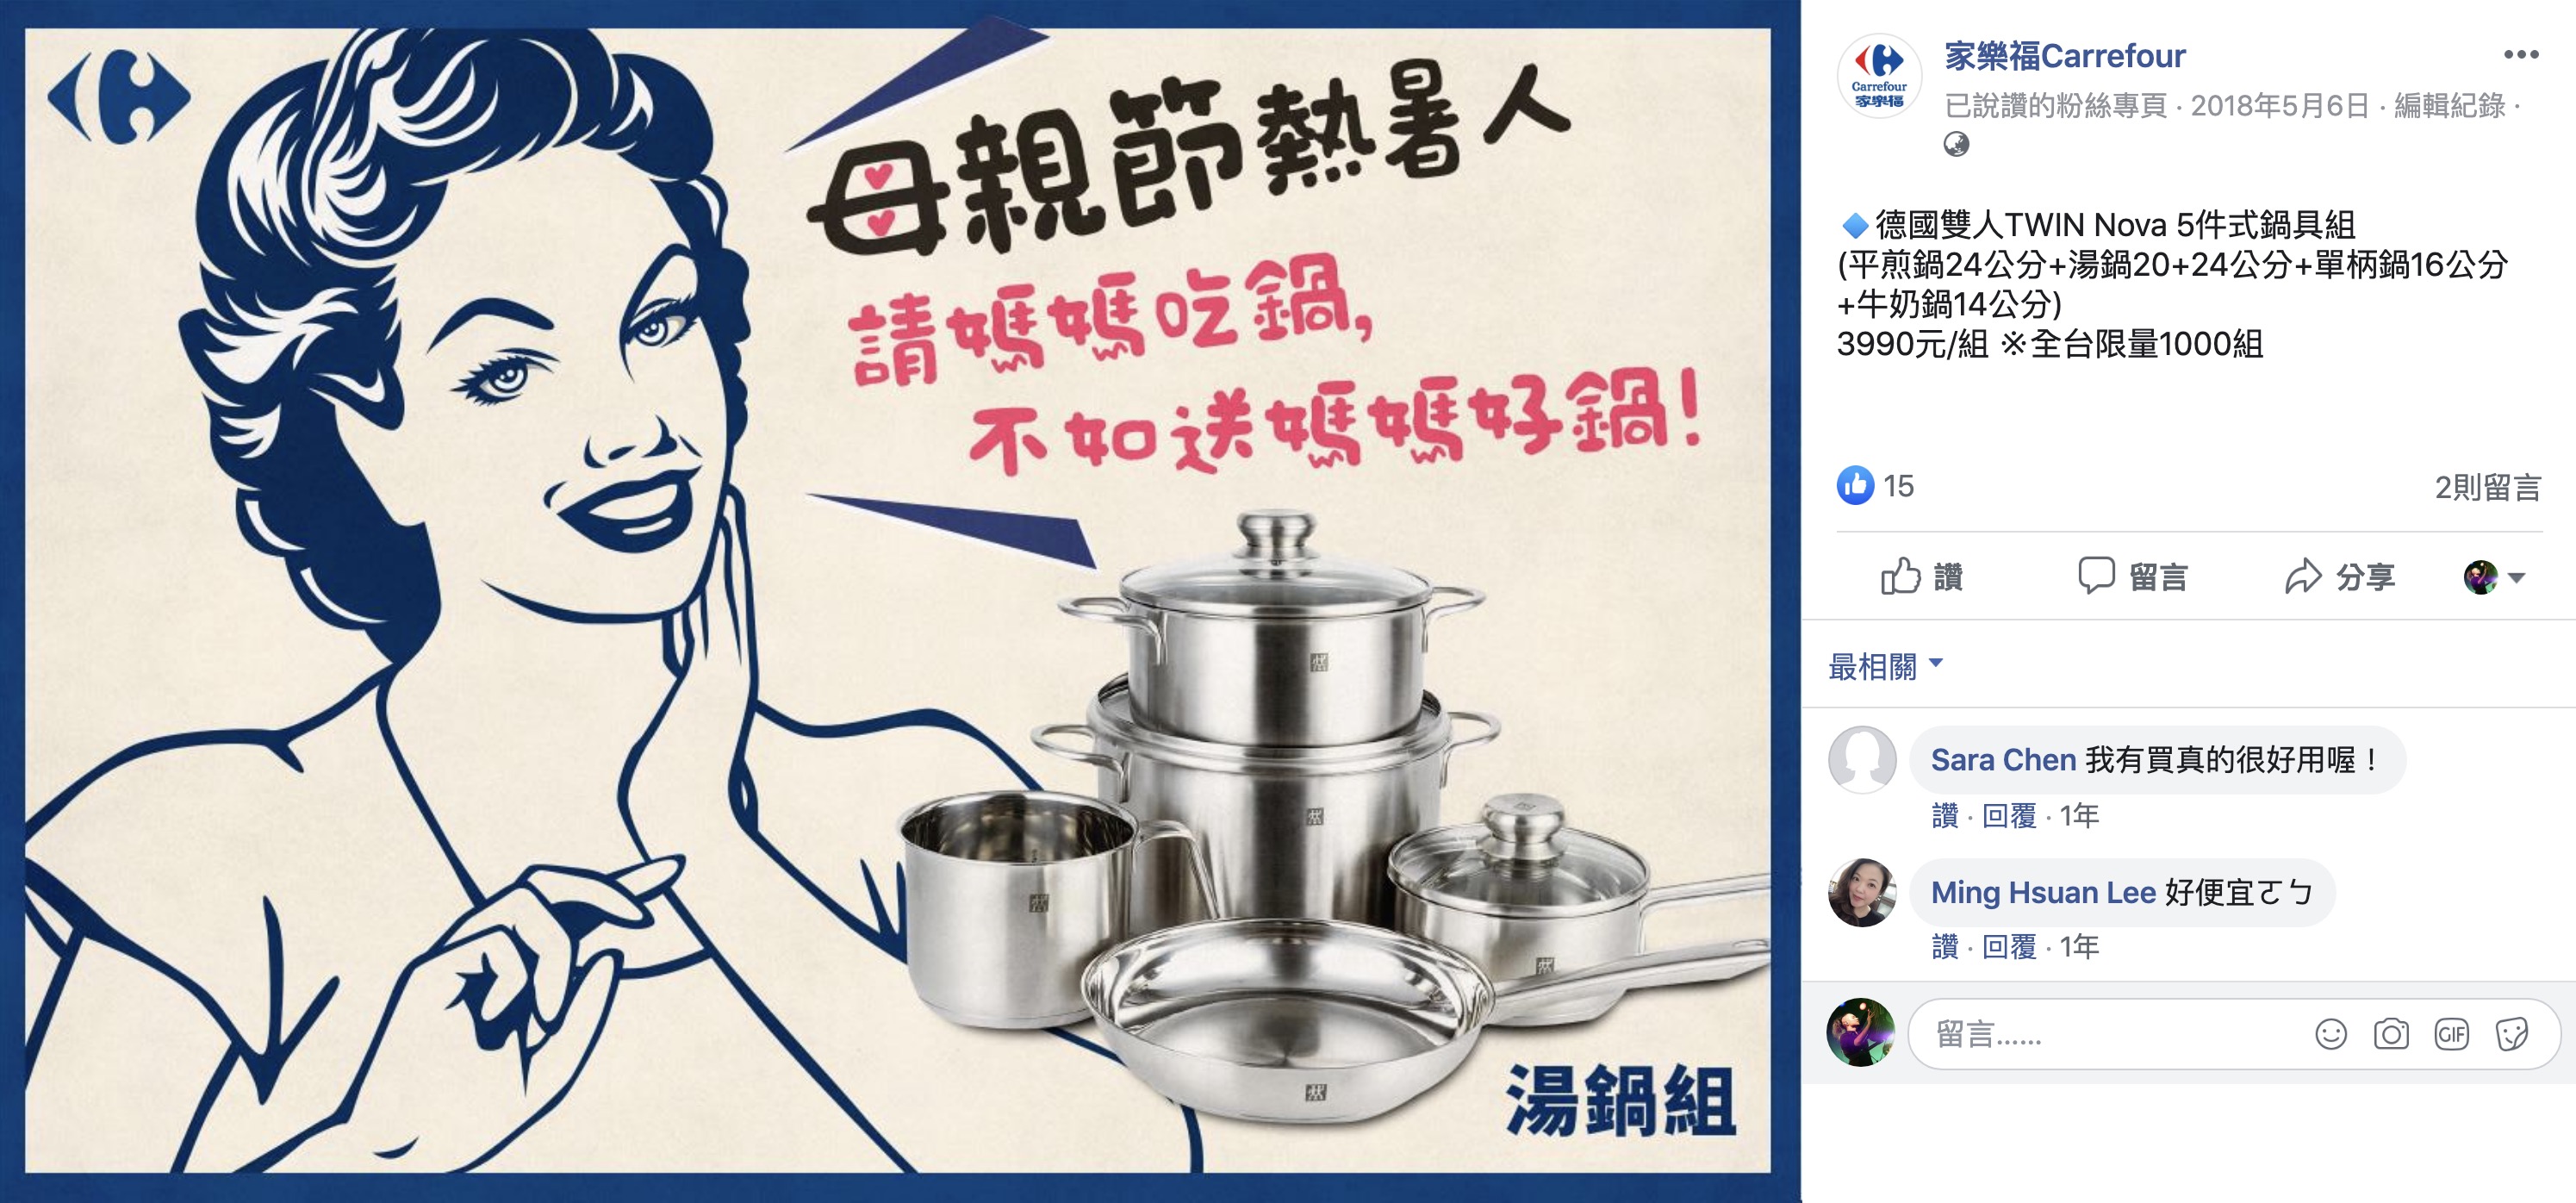 [問題] 請問我需要再買一個深平煎鍋嗎？